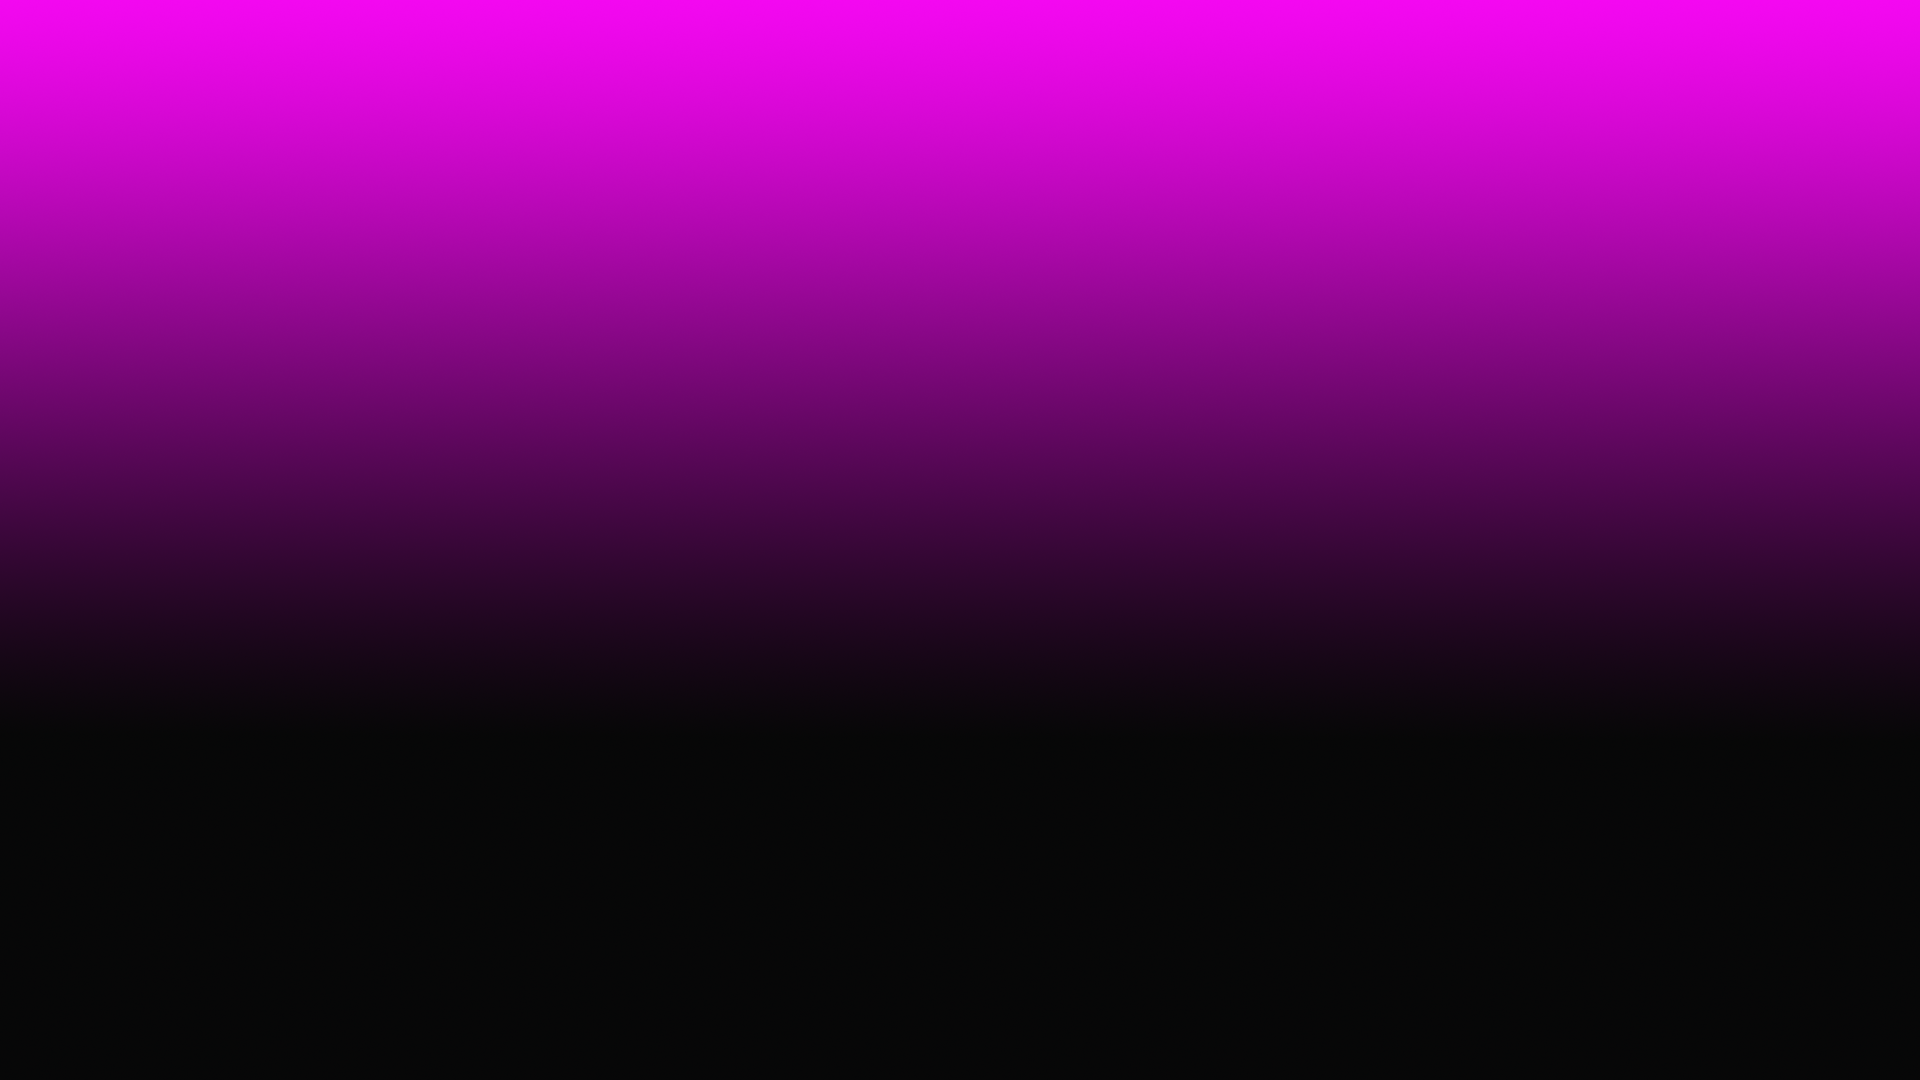 Pink Black Fading Gradient Desktop Wallpaper Viztv Media